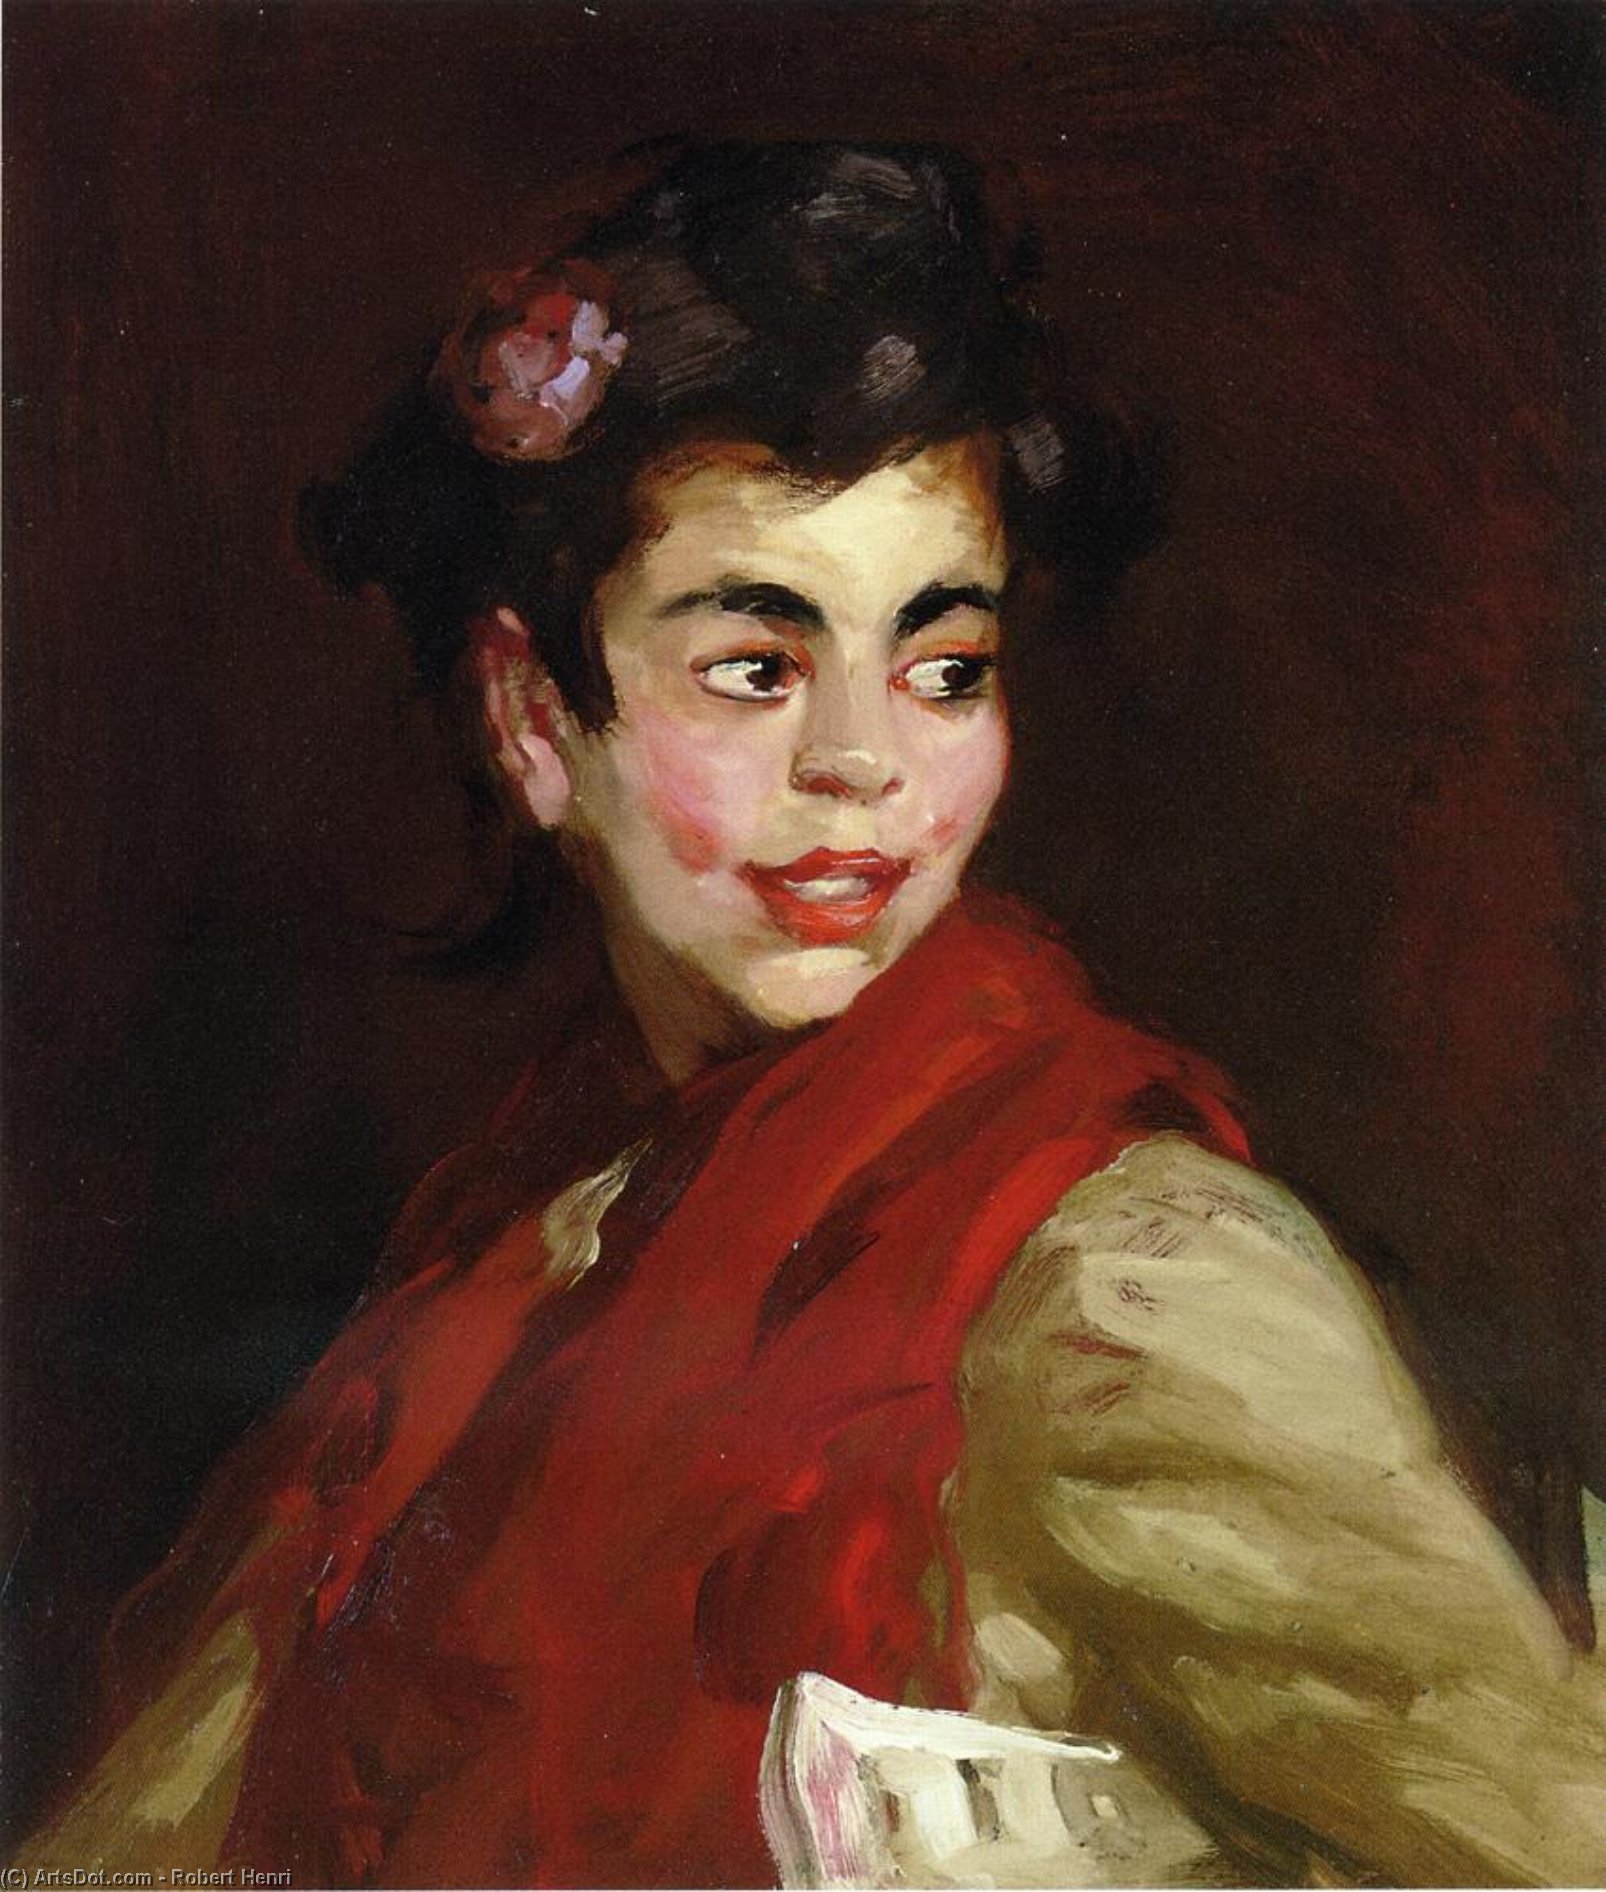 WikiOO.org - Encyclopedia of Fine Arts - Målning, konstverk Robert Henri - Newsgirl, Madrid, Spain